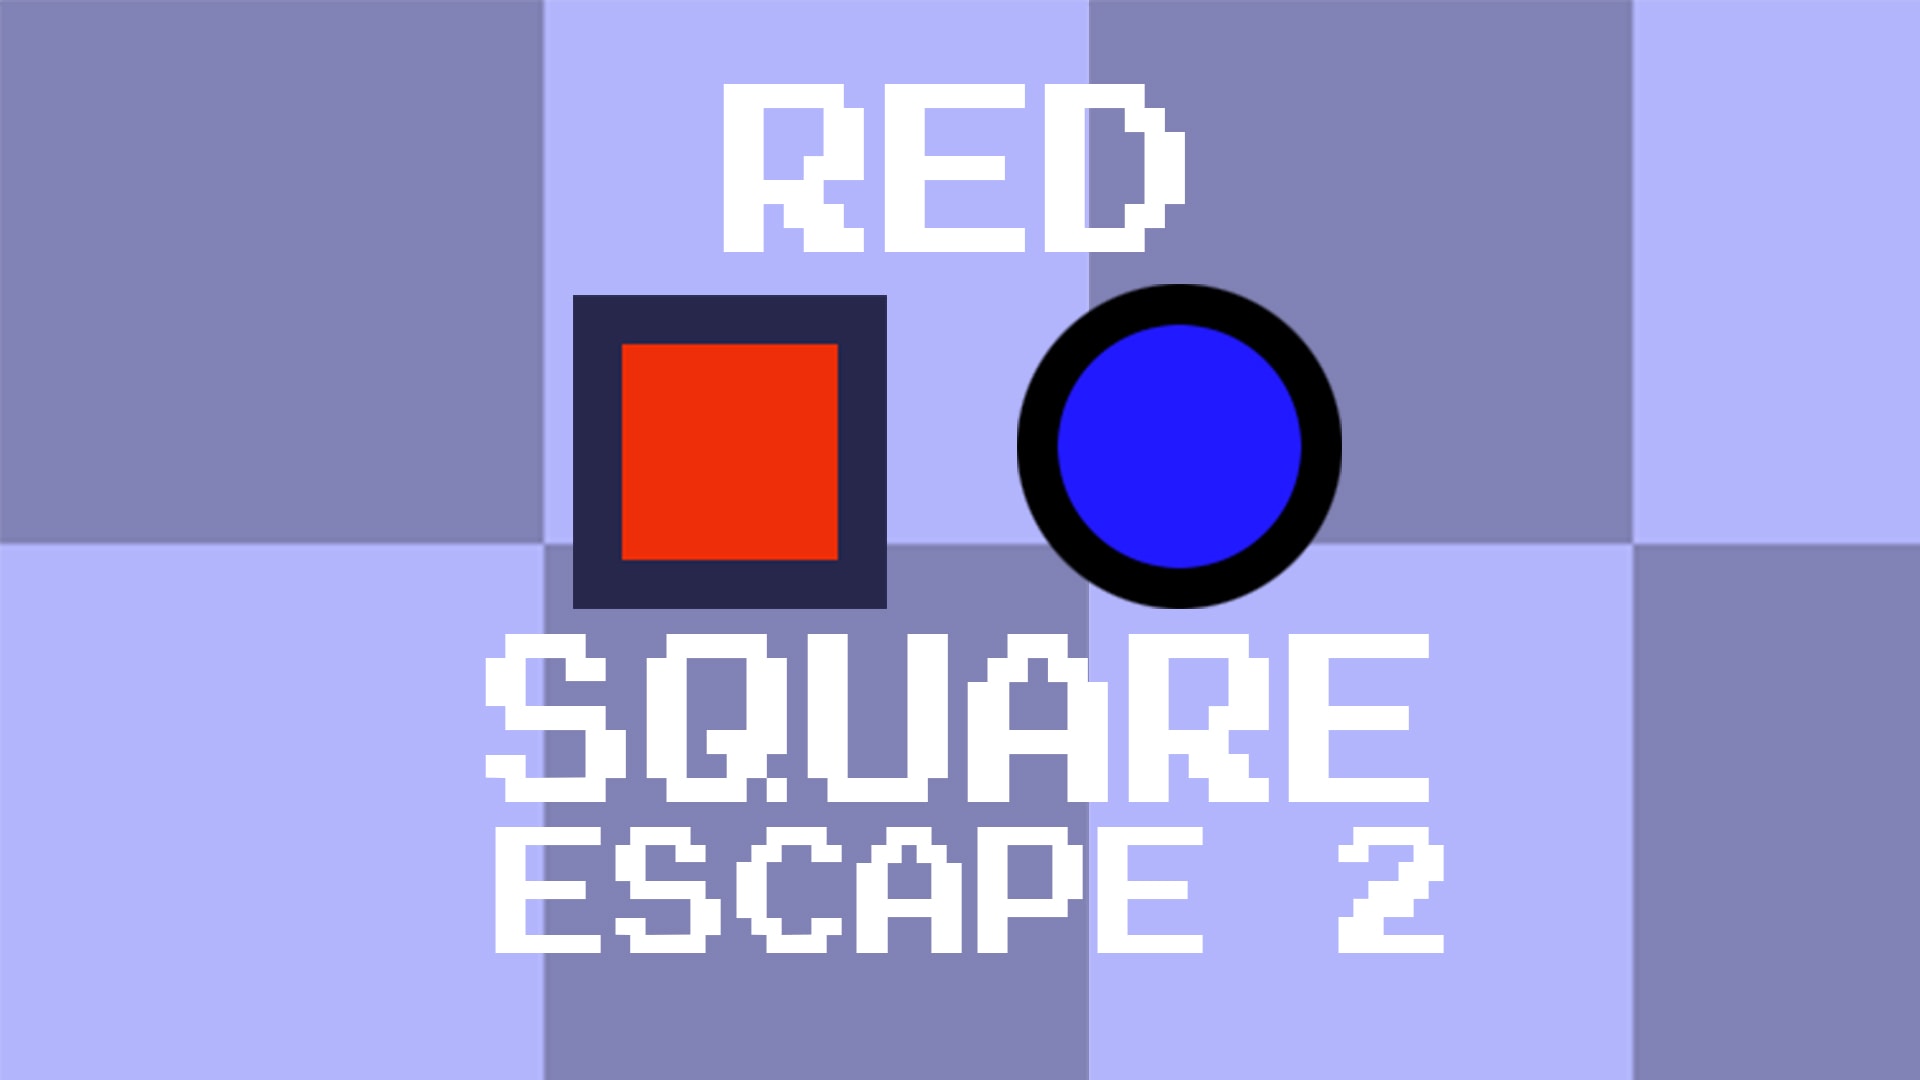 Red Square Escape 2